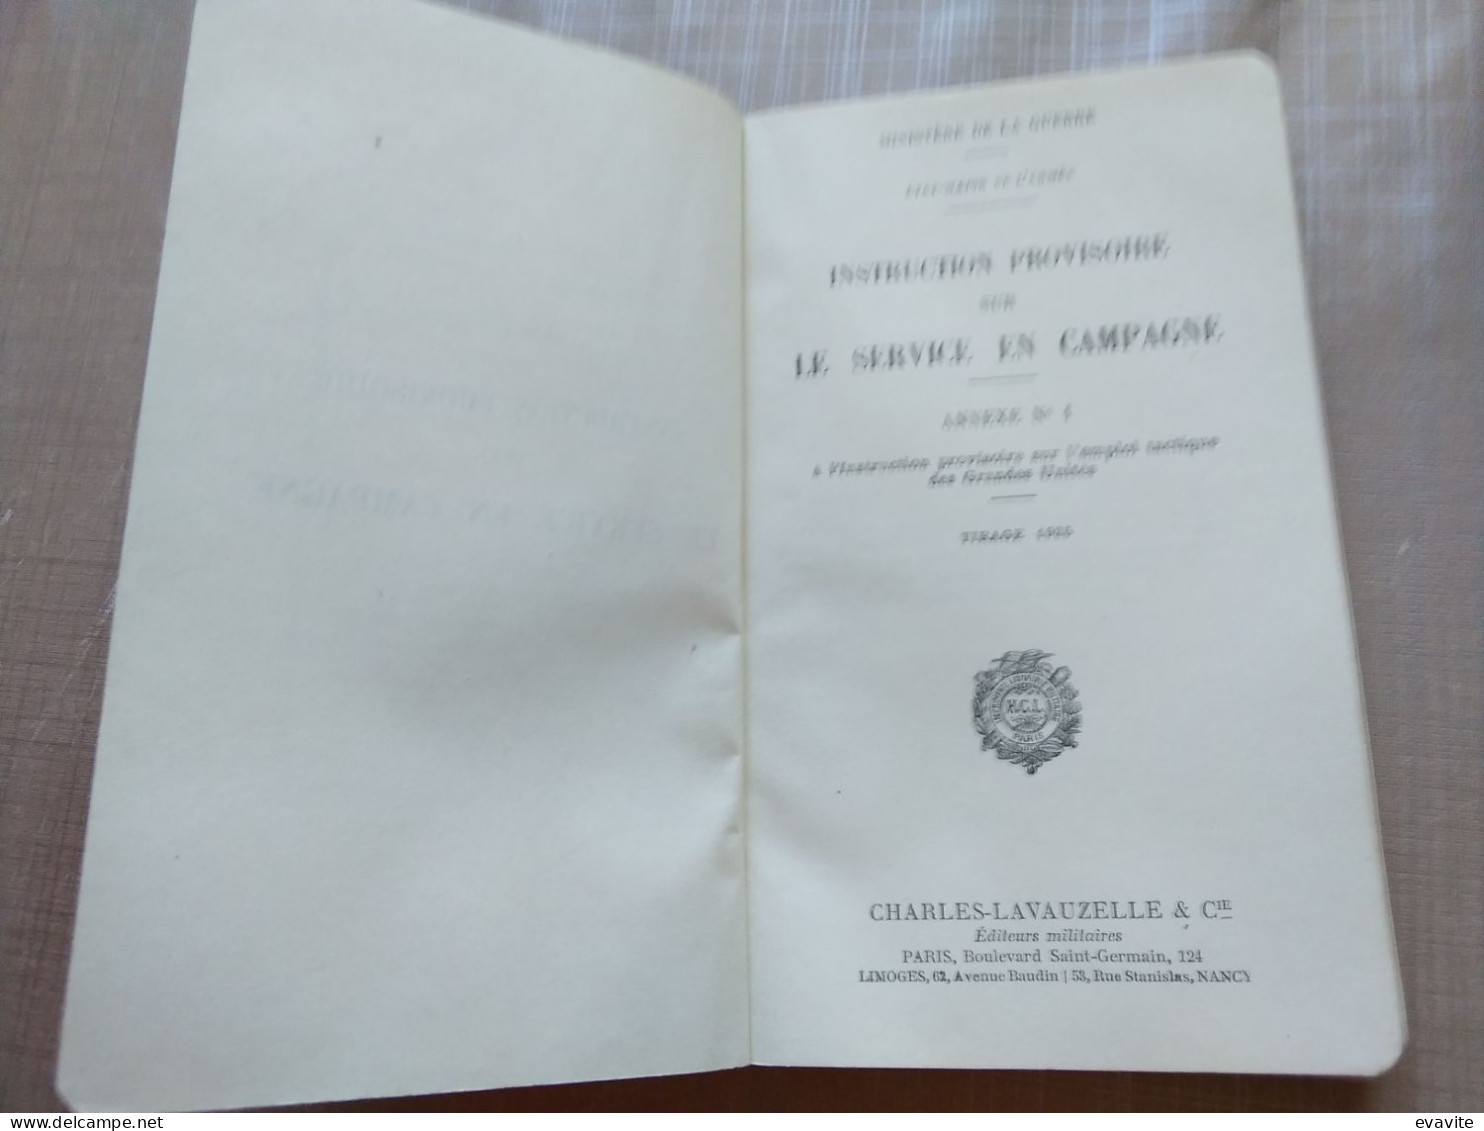 1924 - Ministère De La Guerre - Instruction Provisoire Sur LE SERVICE EN CAMPAGNE Annexe N° 1 - Francese